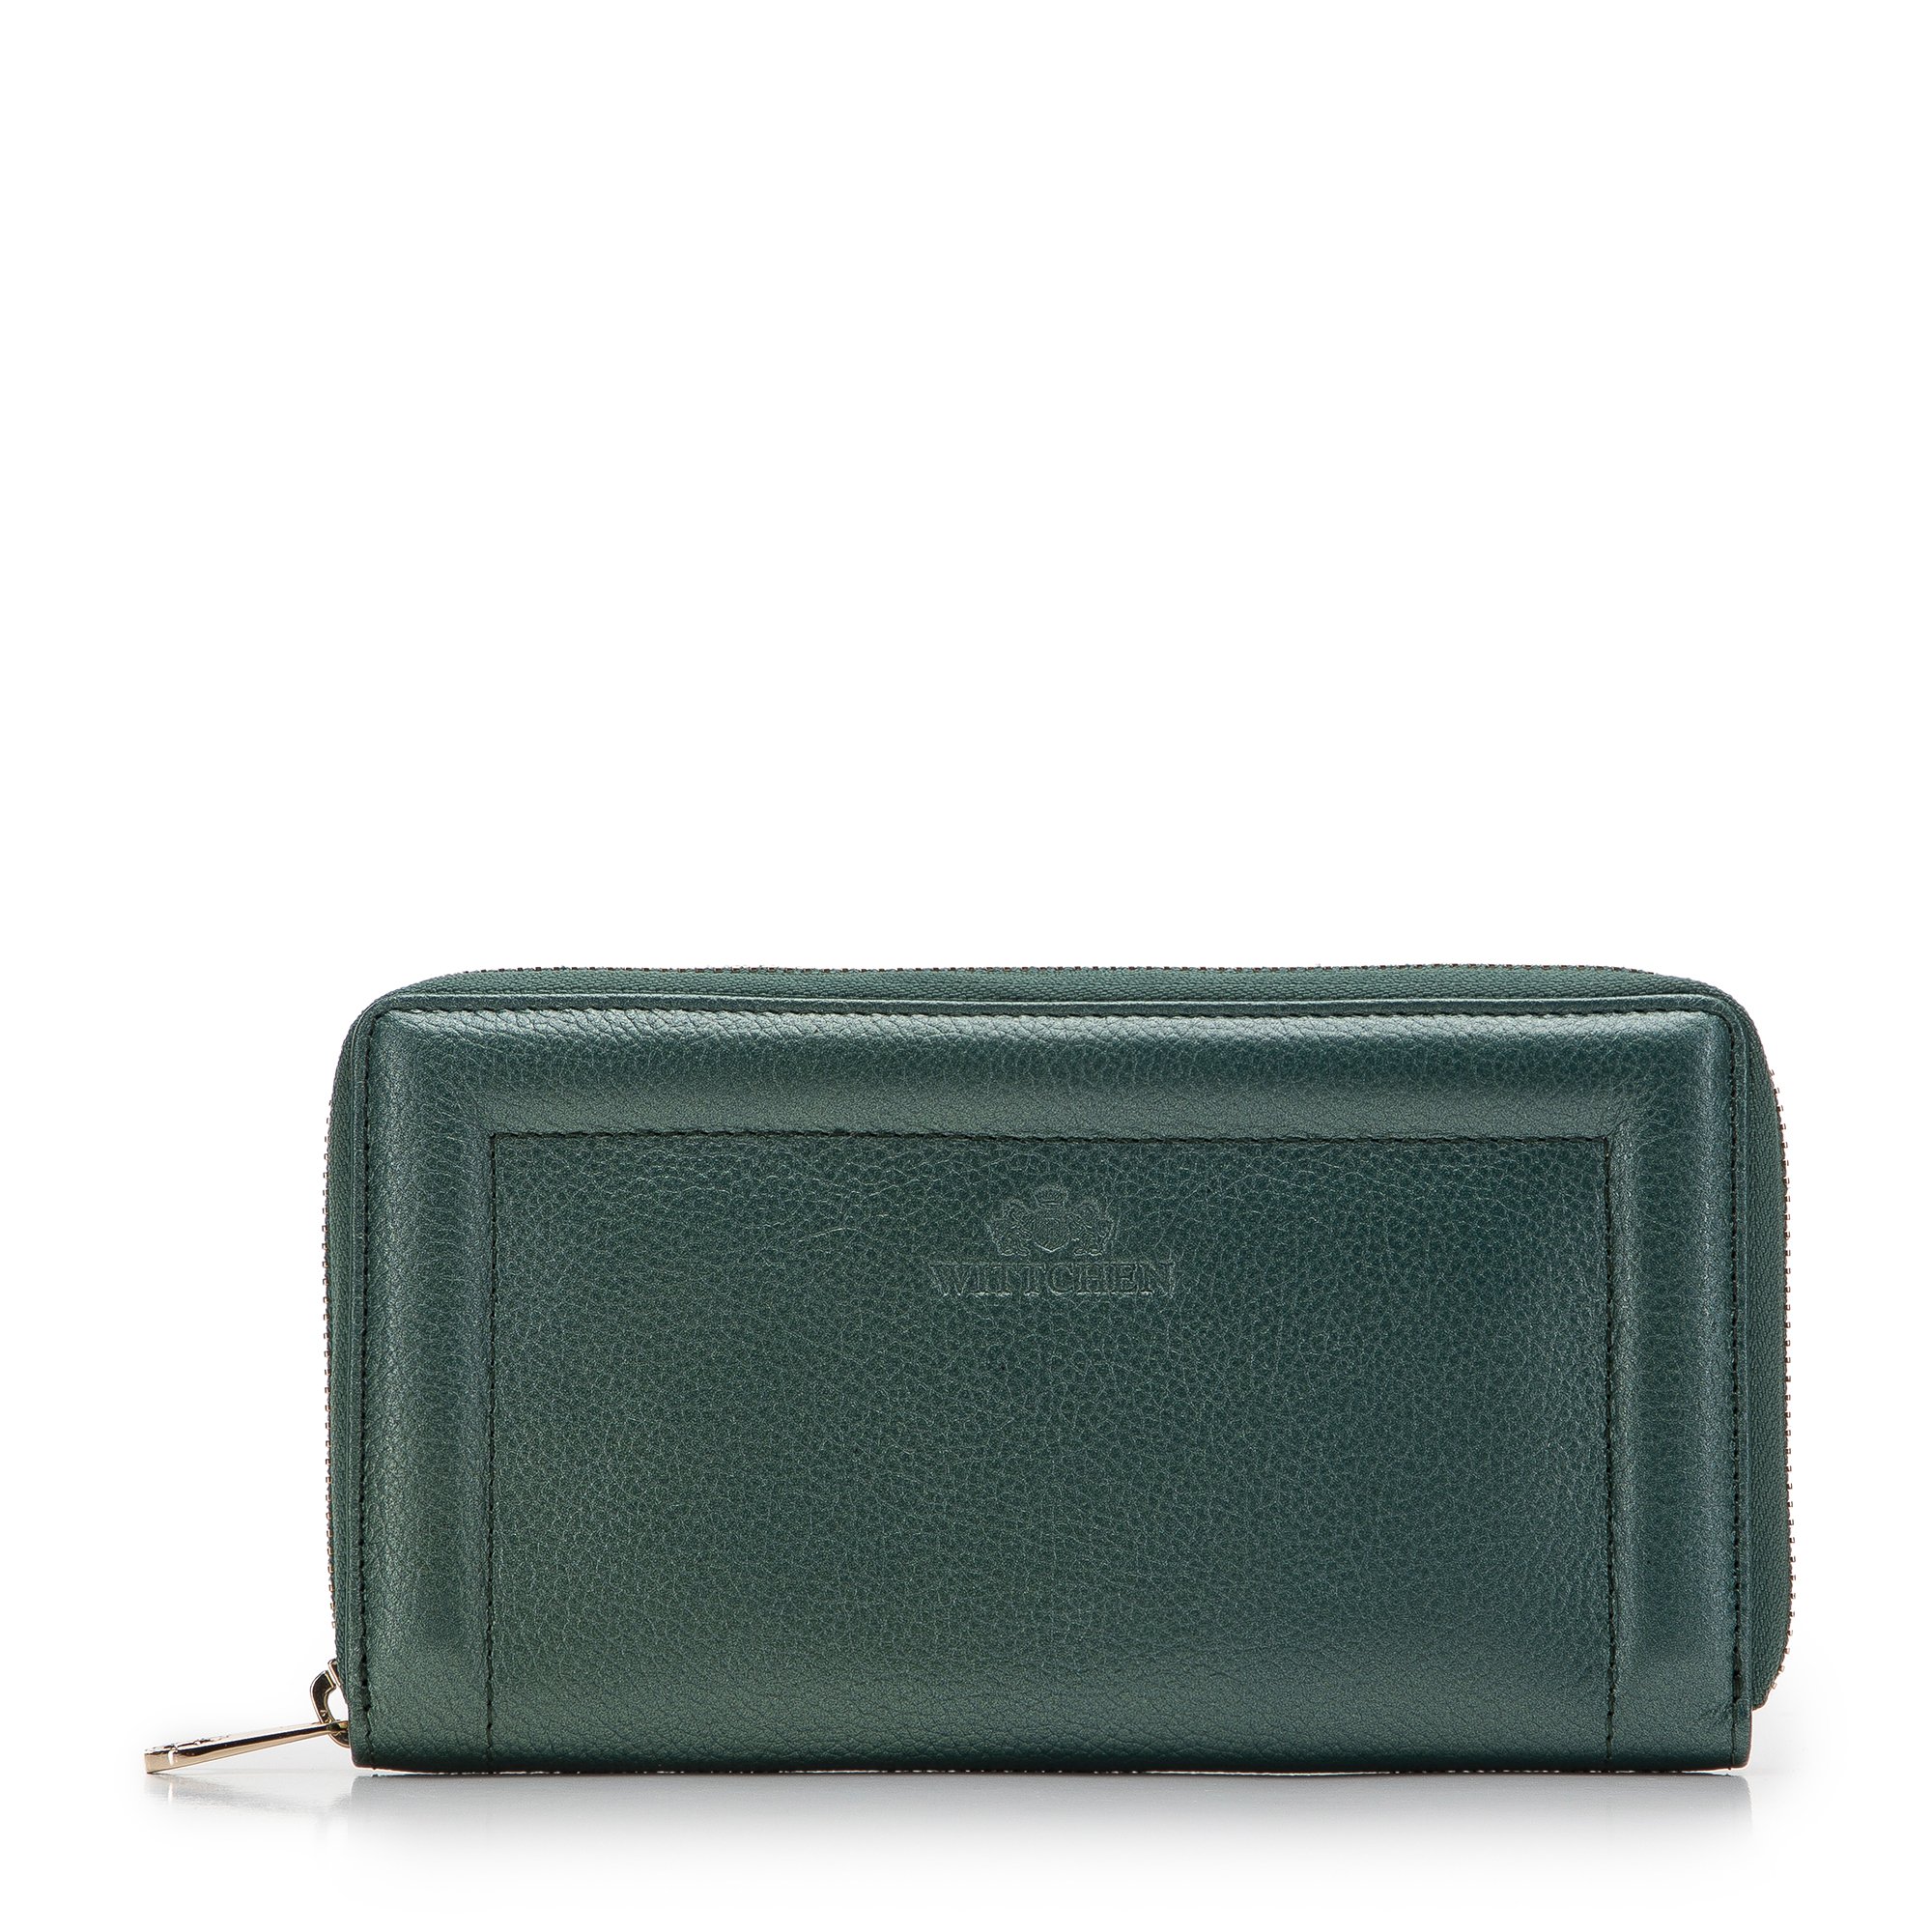 E-shop Dámska kožená peňaženka s ozdobným okrajom, veľká zelená 14-1-936-0